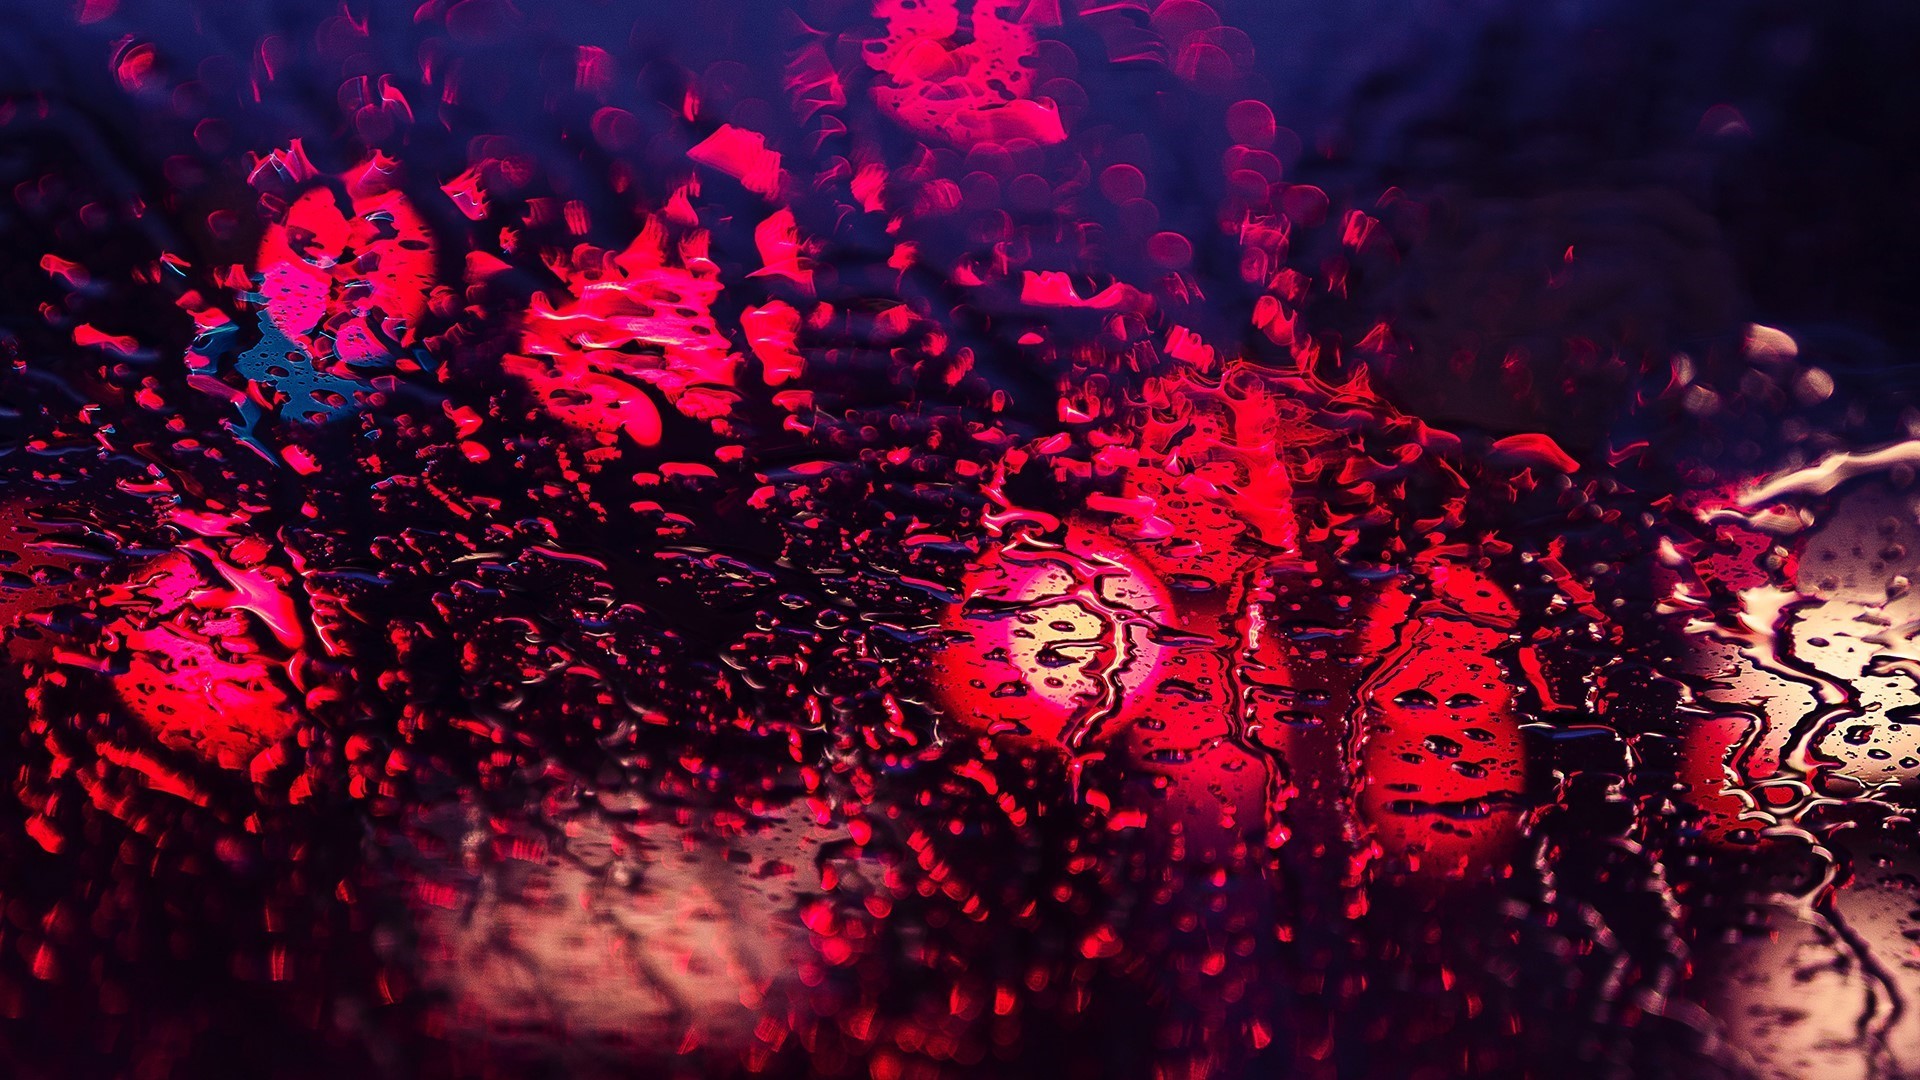 Traffic Lights Red Rain Bokeh Lights Water On Glass Purple Water Drops Street Light Water Depth Of Field